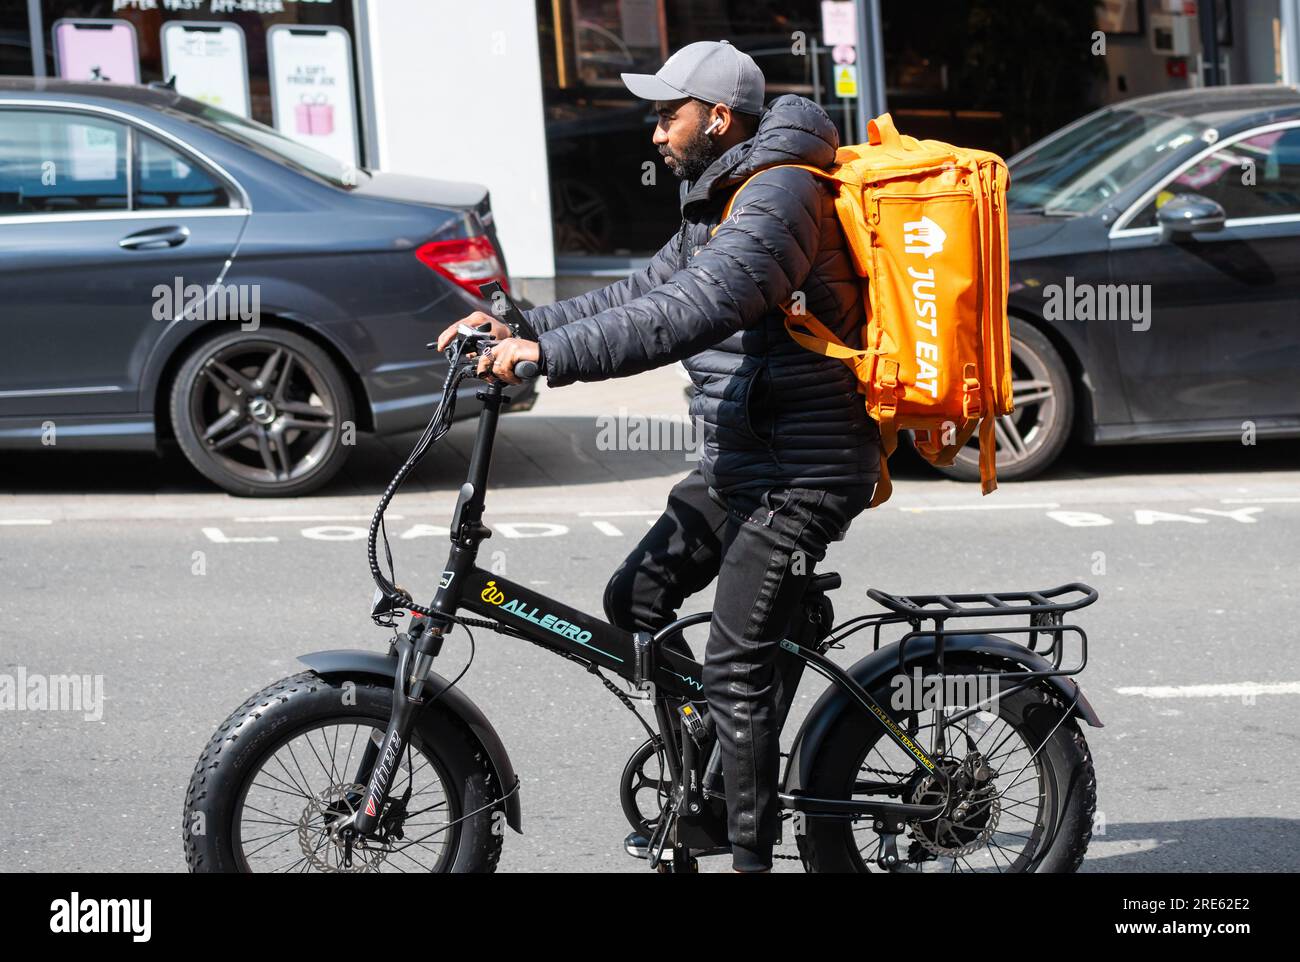 Cycliste roulant à vélo livrant de la nourriture pour Just Eat à Brighton & Hove, East Sussex, Angleterre, Royaume-Uni. Banque D'Images